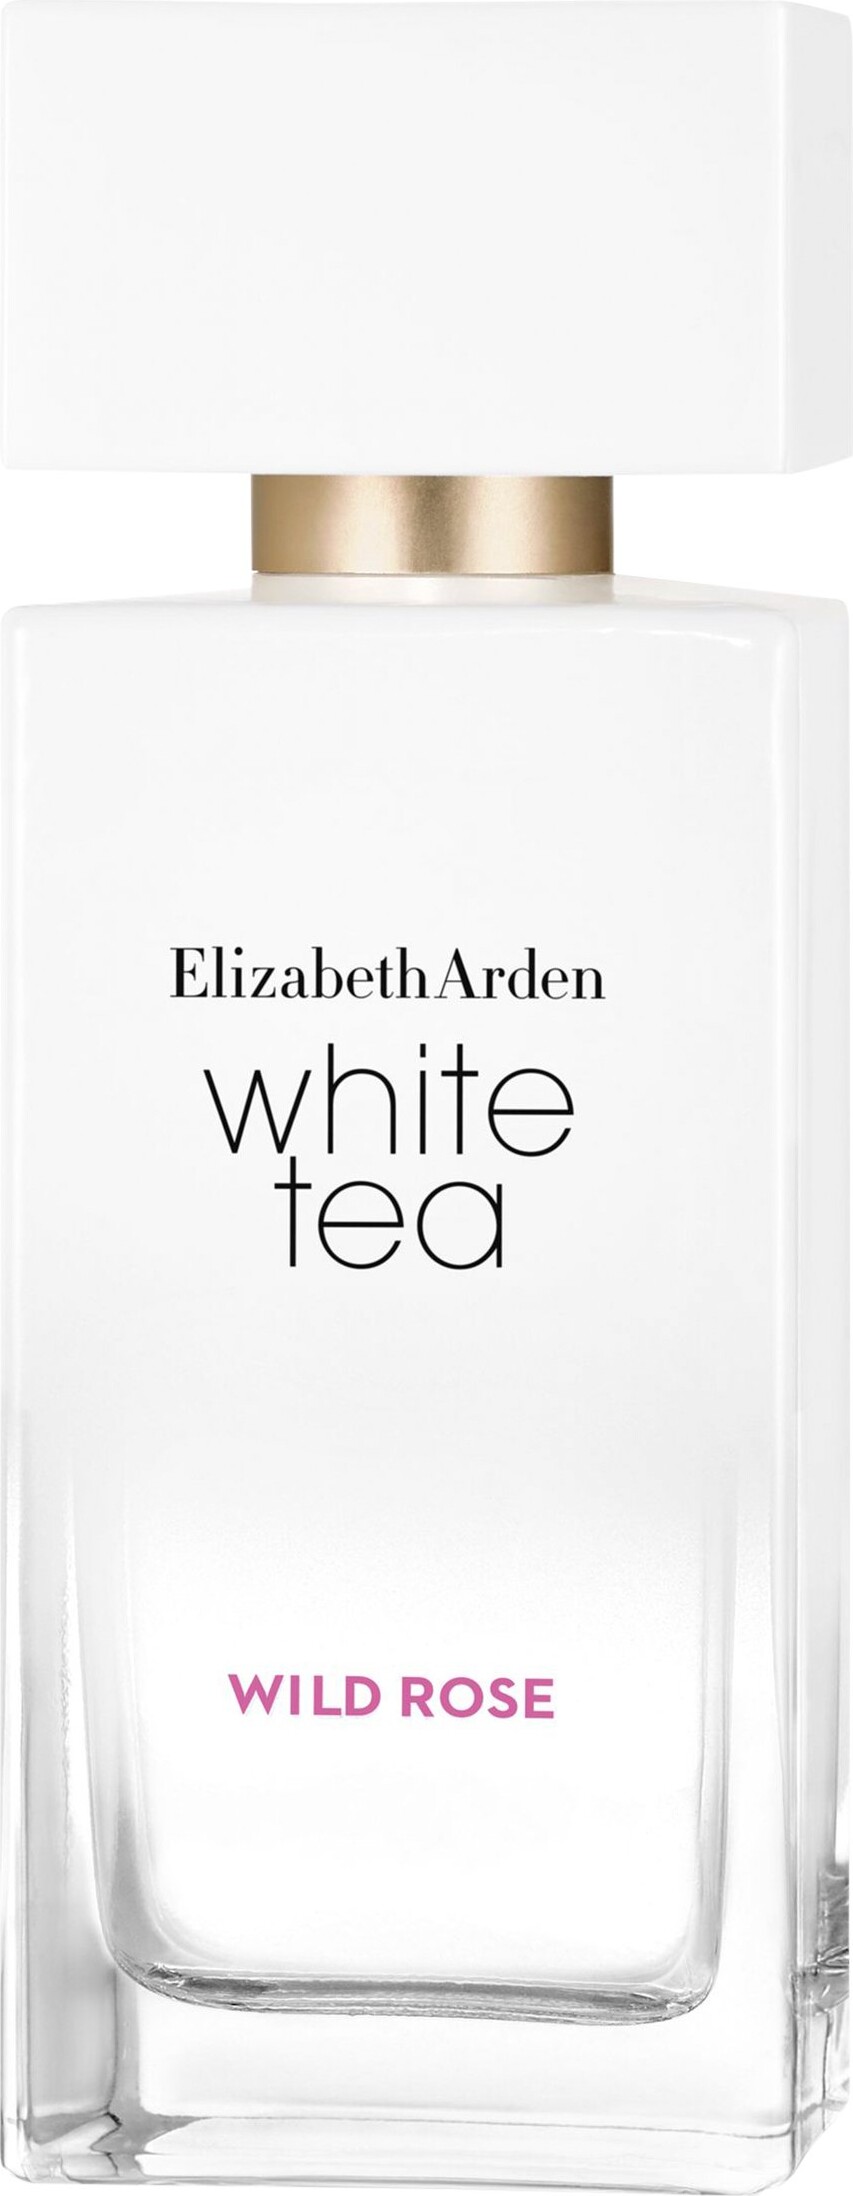 Se Elizabeth Arden Dameparfume - White Tea Wild Rose Edt 50 Ml hos Gucca.dk